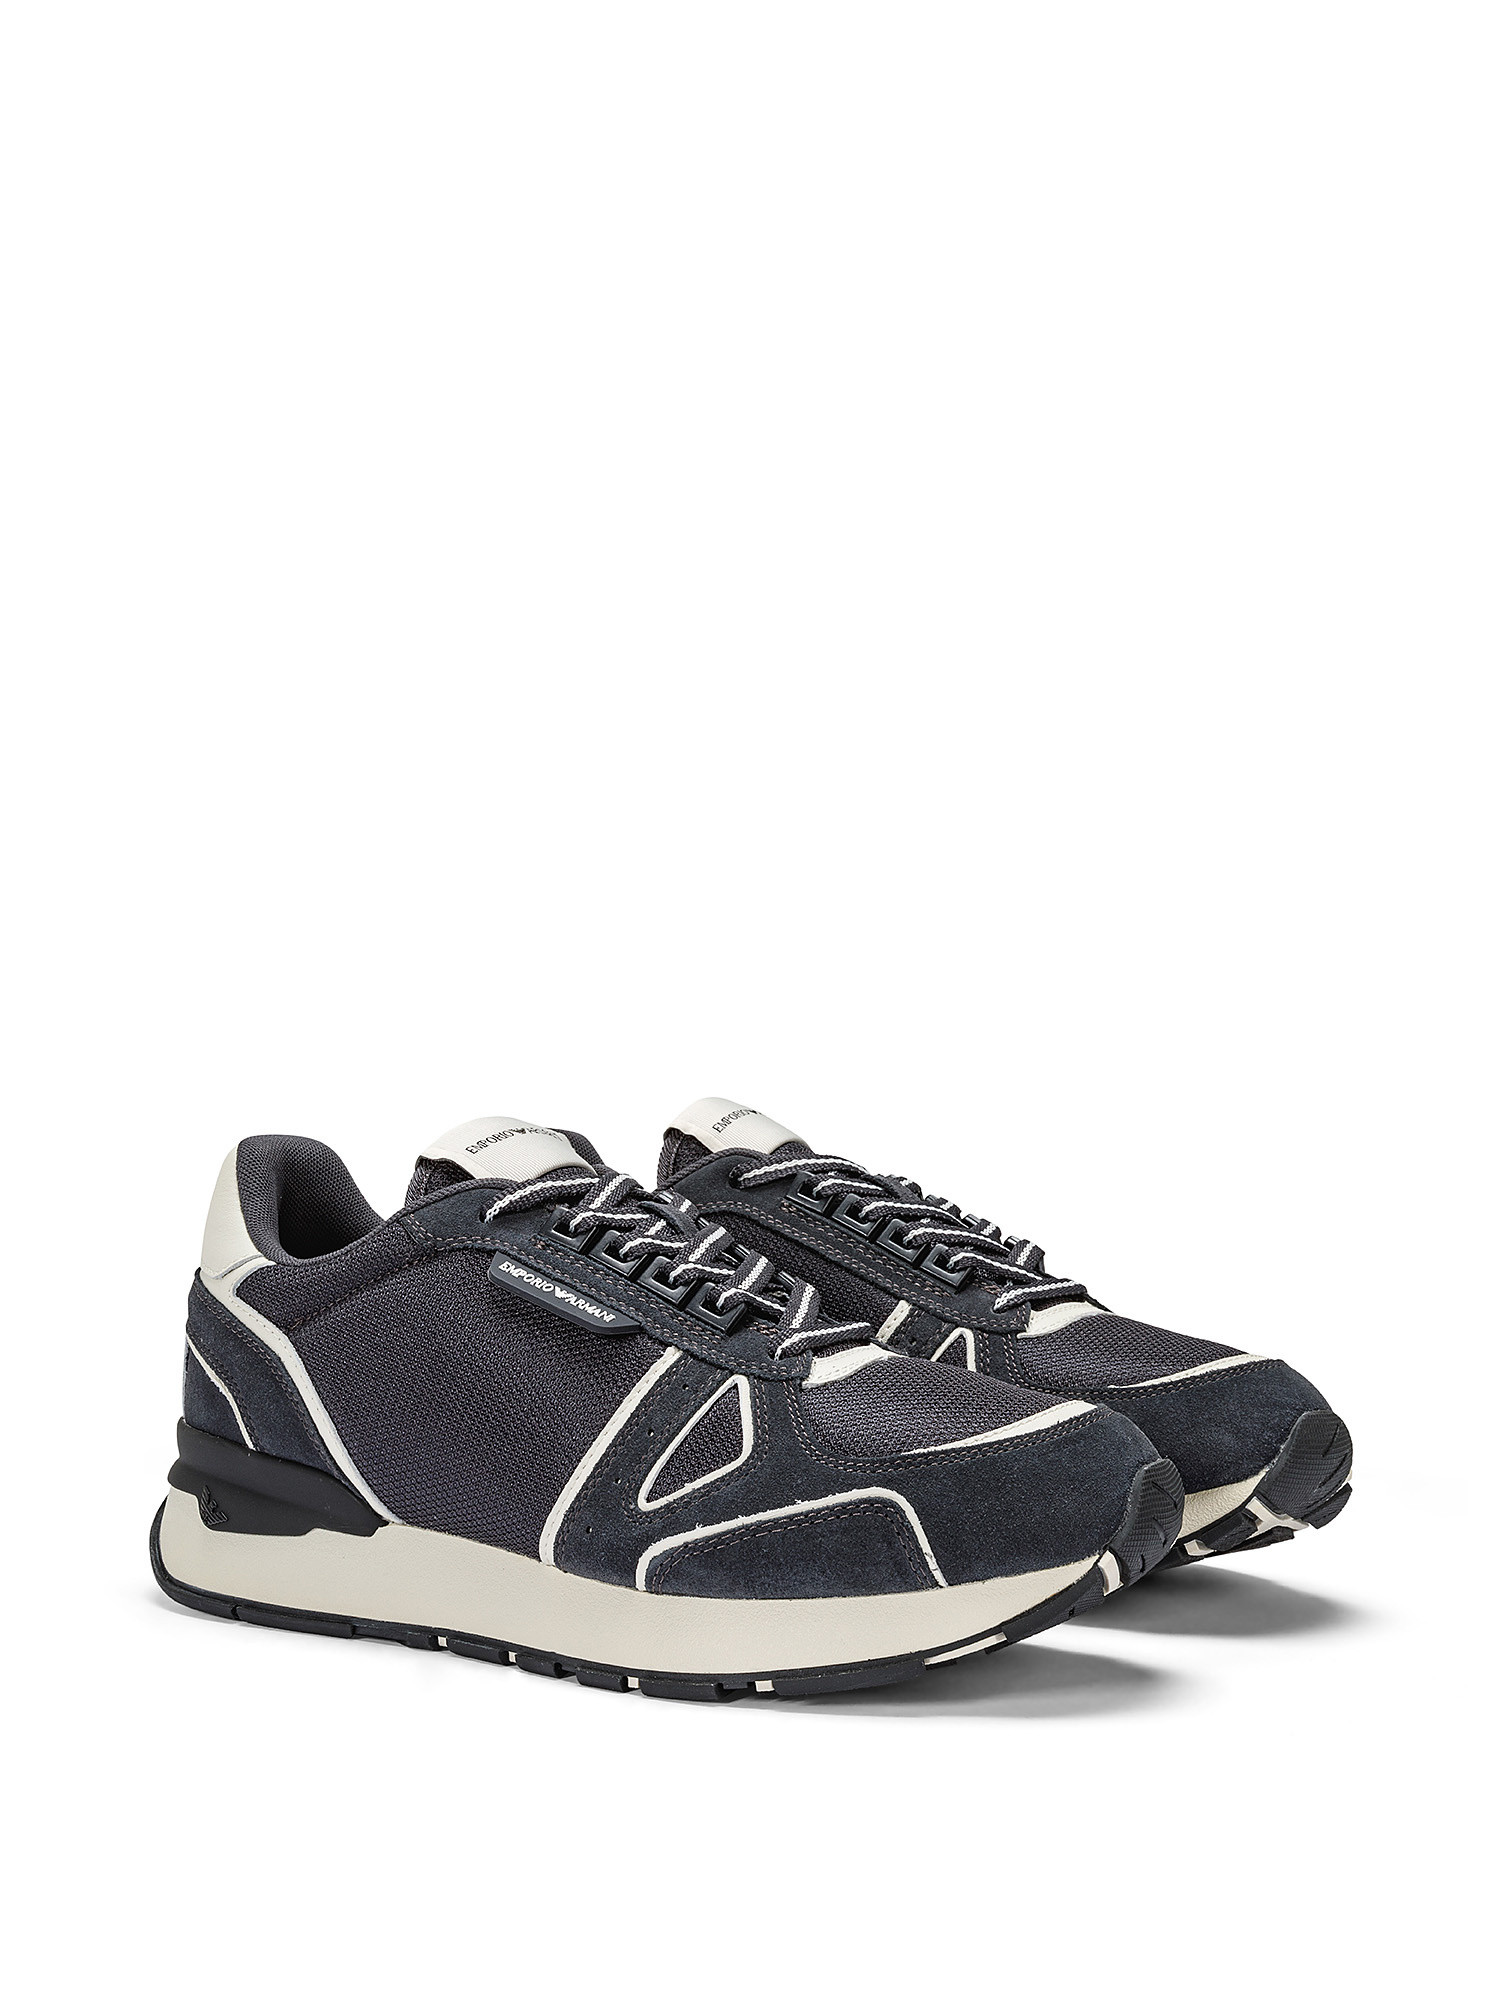 Emporio Armani - Sneakers con inserti scamosciati, Blu scuro, large image number 1